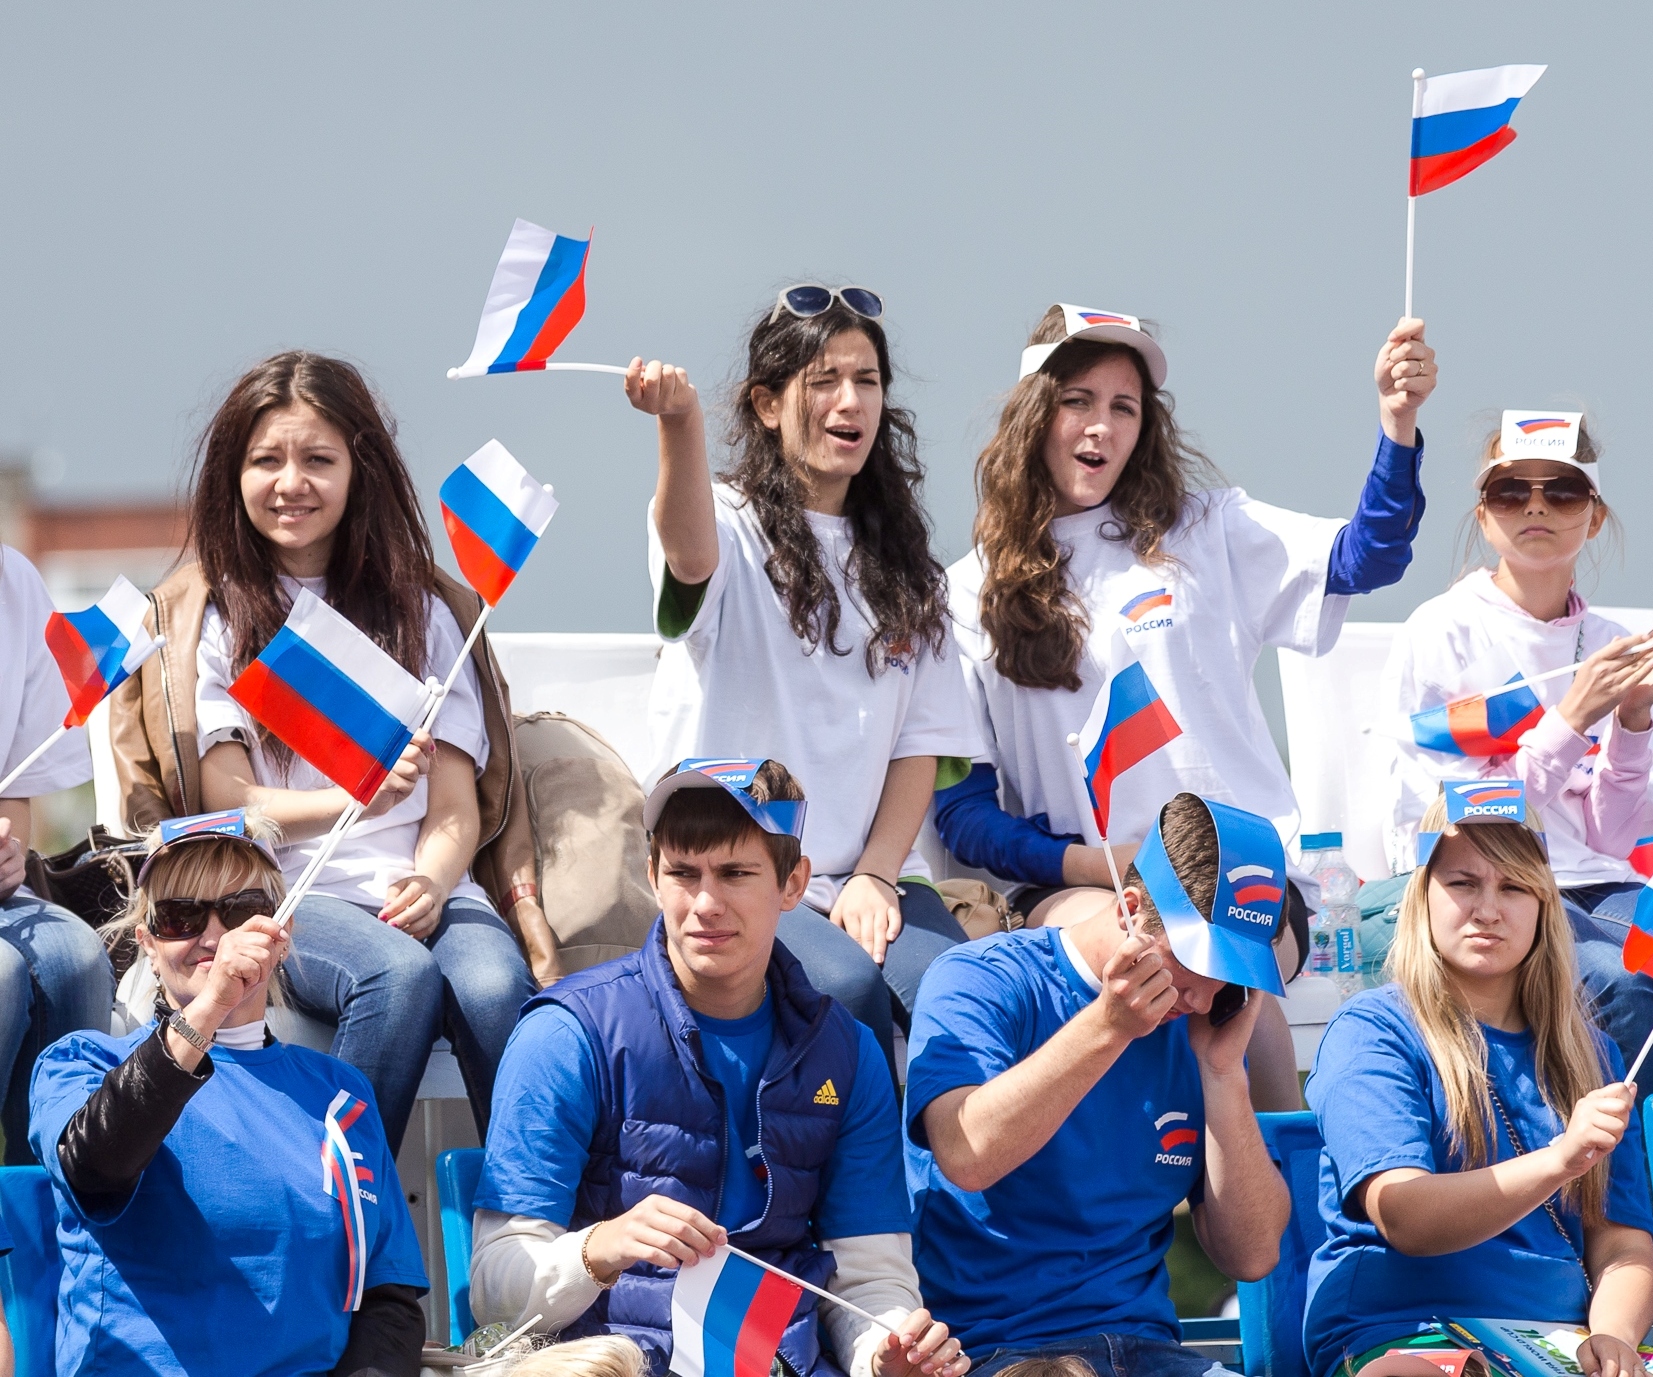 Первые молодежные организации. Молодежь России. Молодежные объединения. Политическая молодежь. Молодежь и политика.